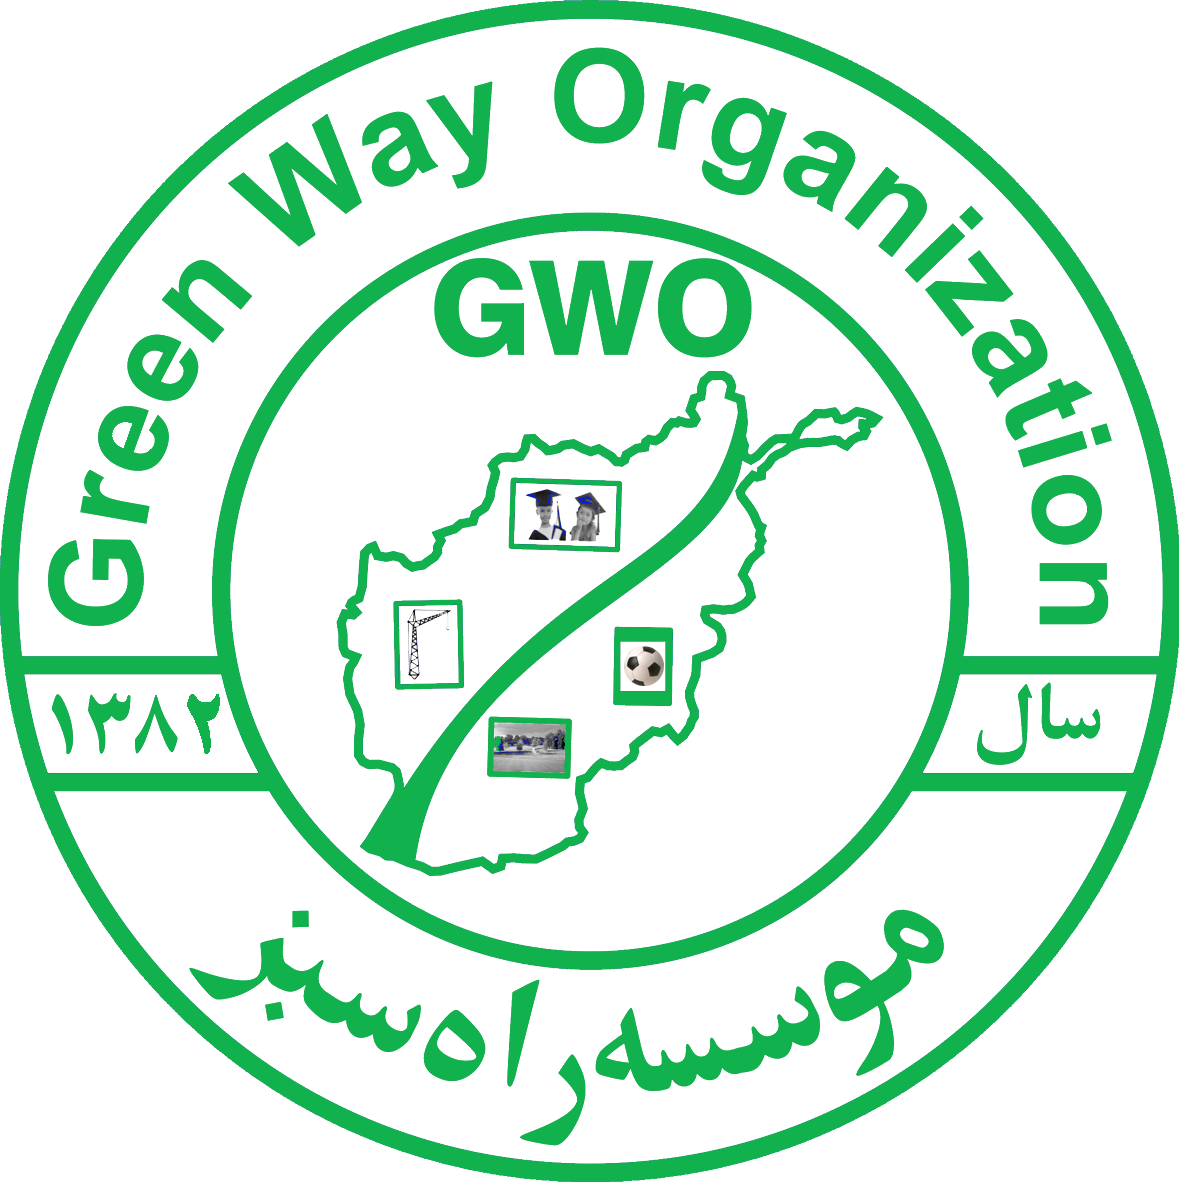 Green Way Organization (GWO)